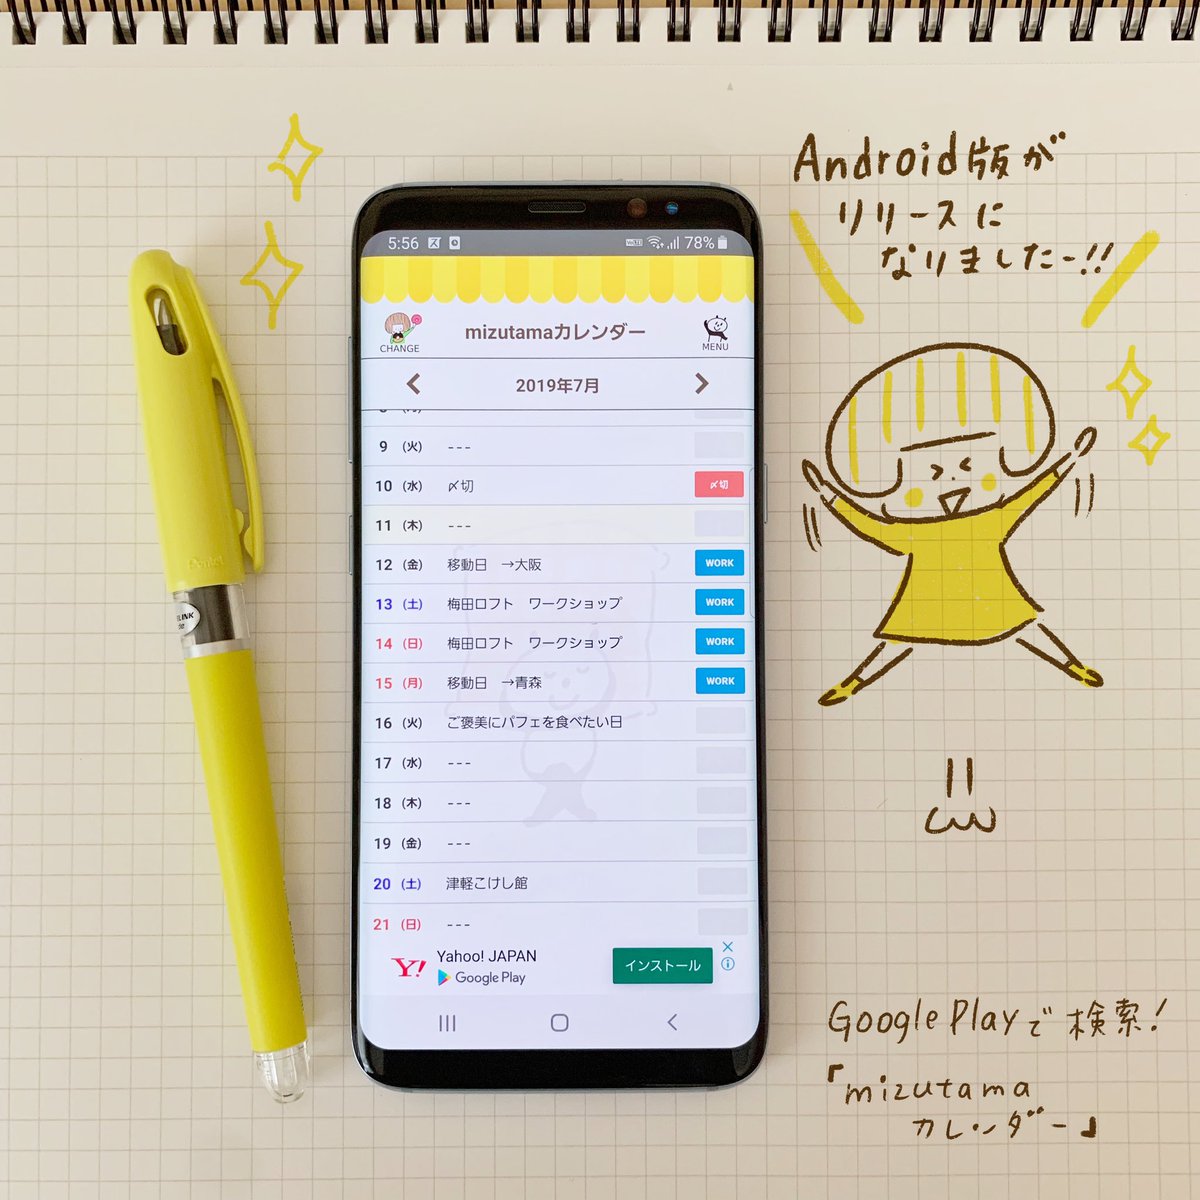 Mizutama Mizutamaカレンダー の Android版がリリースになりましたー シンプルで使いやすい縦 スクロールカレンダーの無料アプリです 無料で使っていただけるように一番下に広告が入ります シンプルなのでちょっとメモしておくのにとても便利